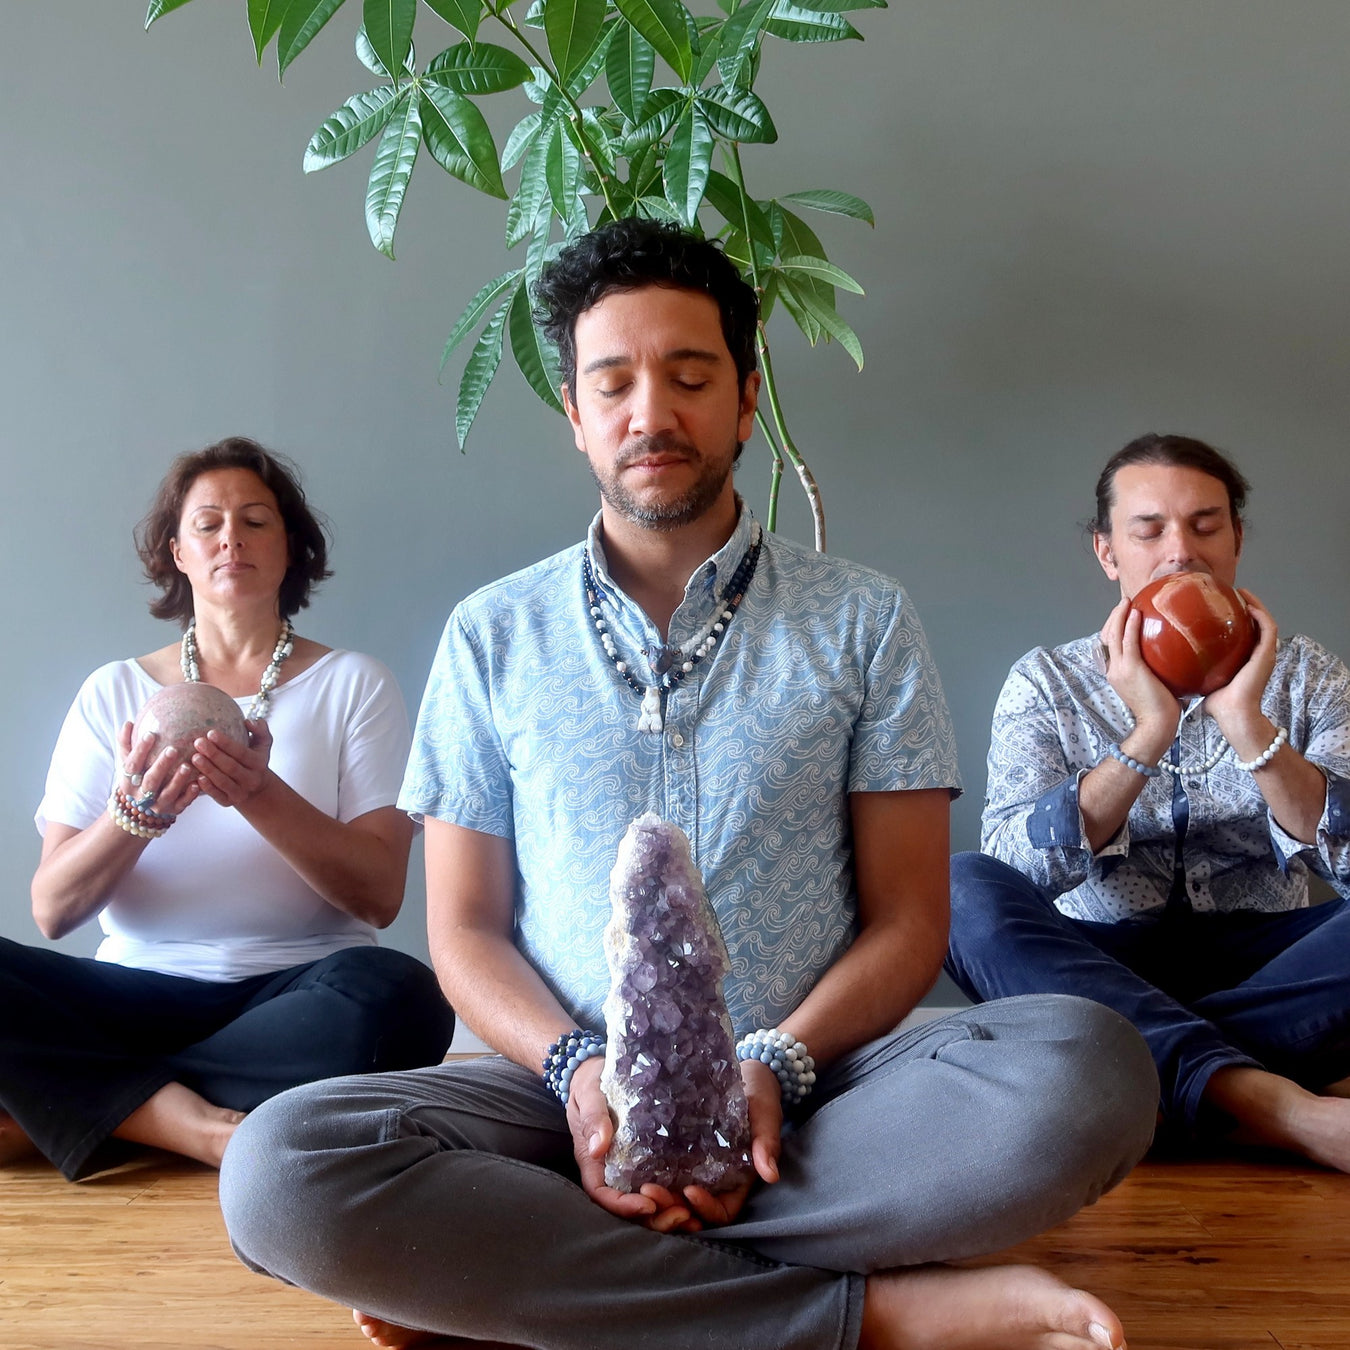 meditation crystals